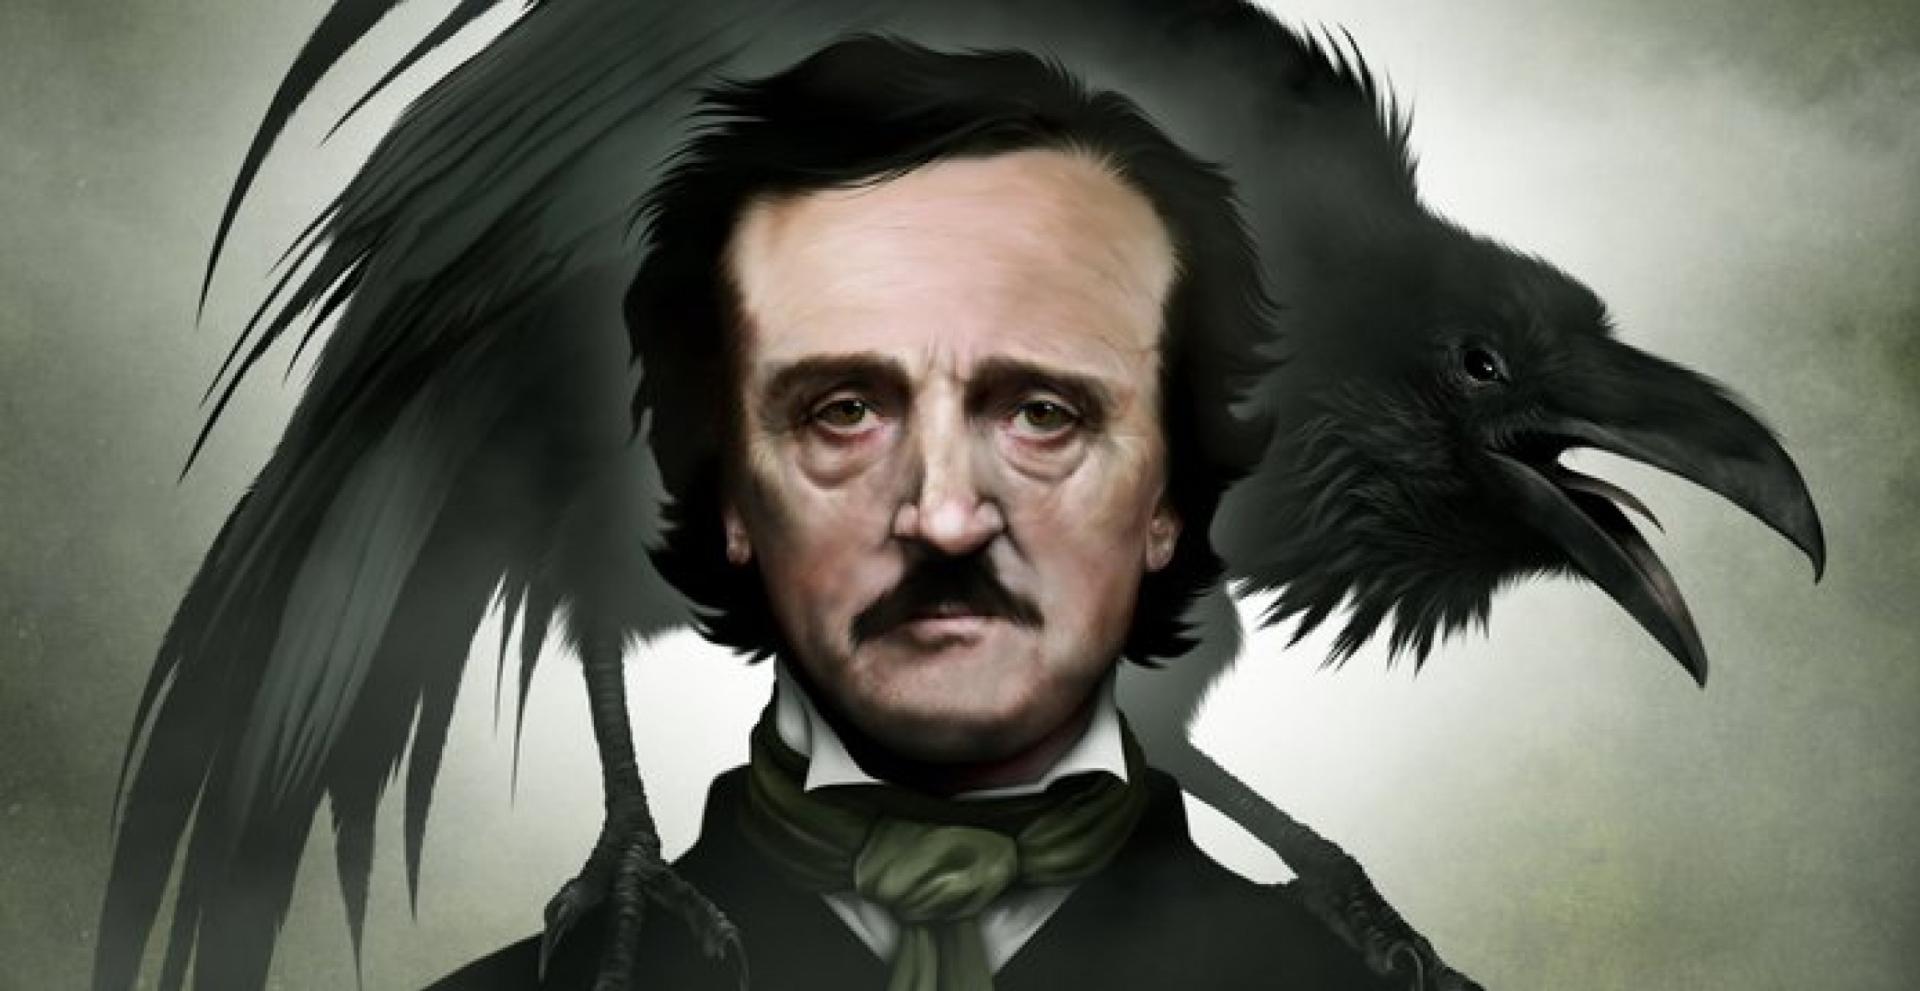 Edgar Allan Poe: Morella című novellájának elemzése